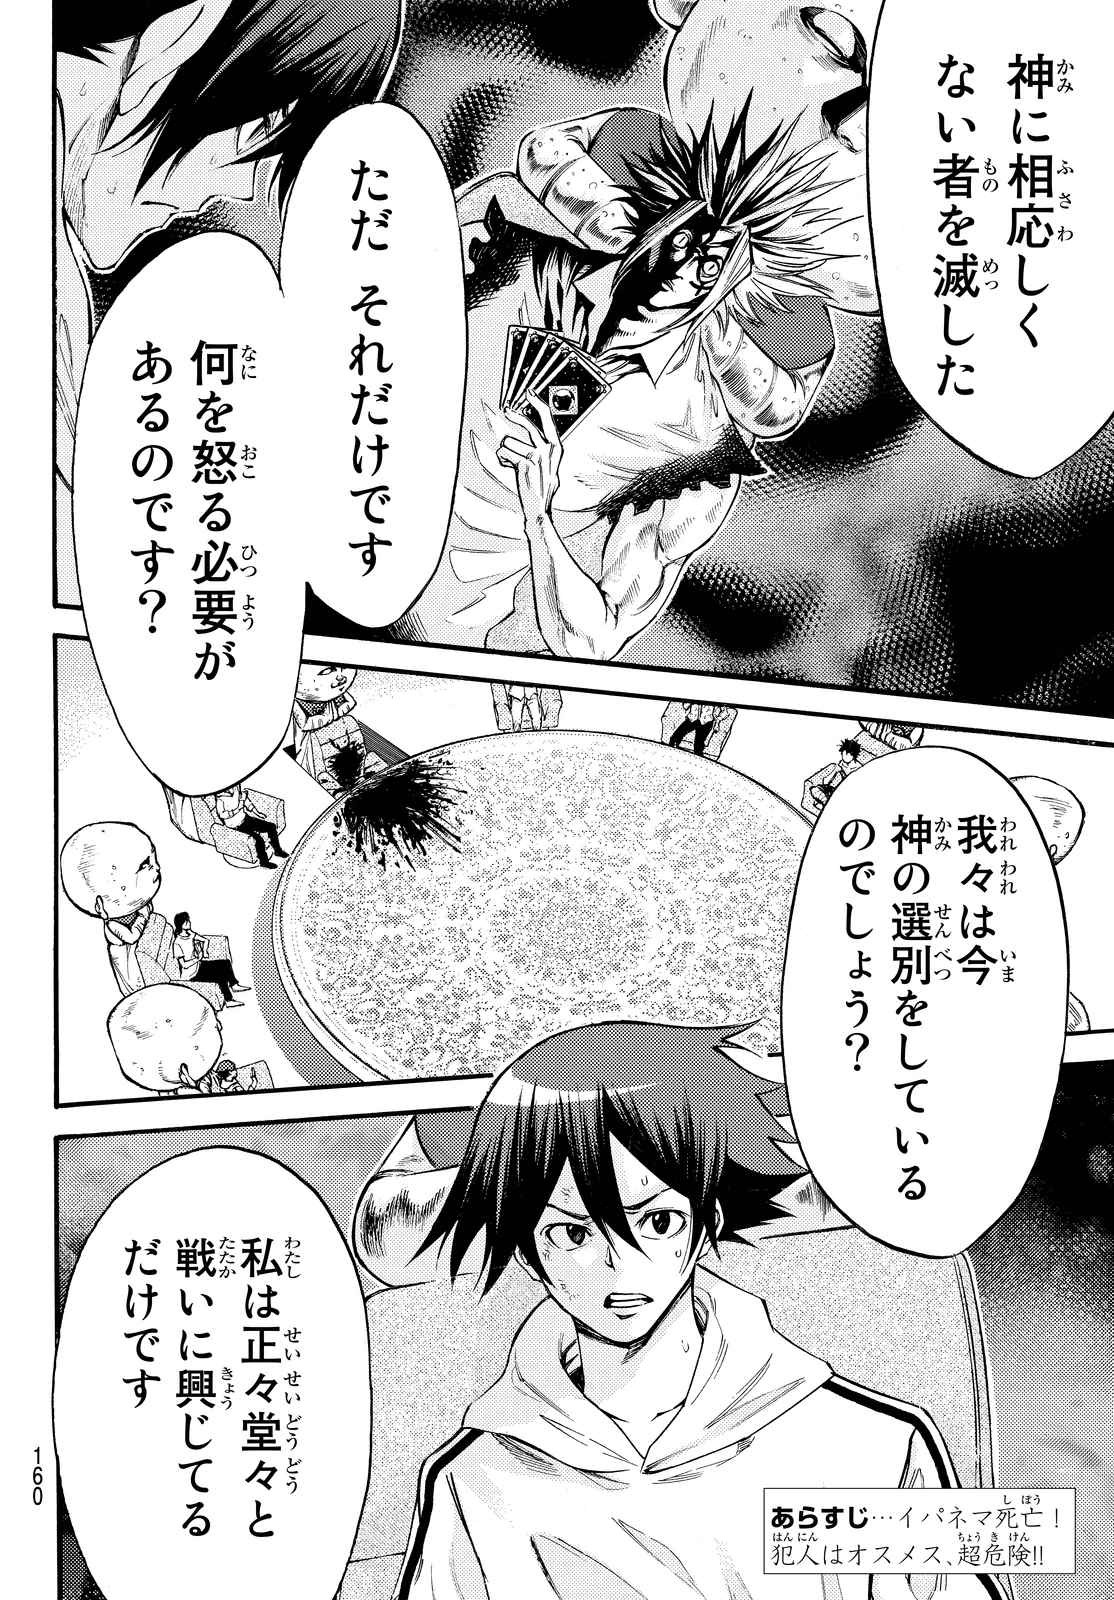 Kamisama no Ituori - Chapter 154 - Page 3